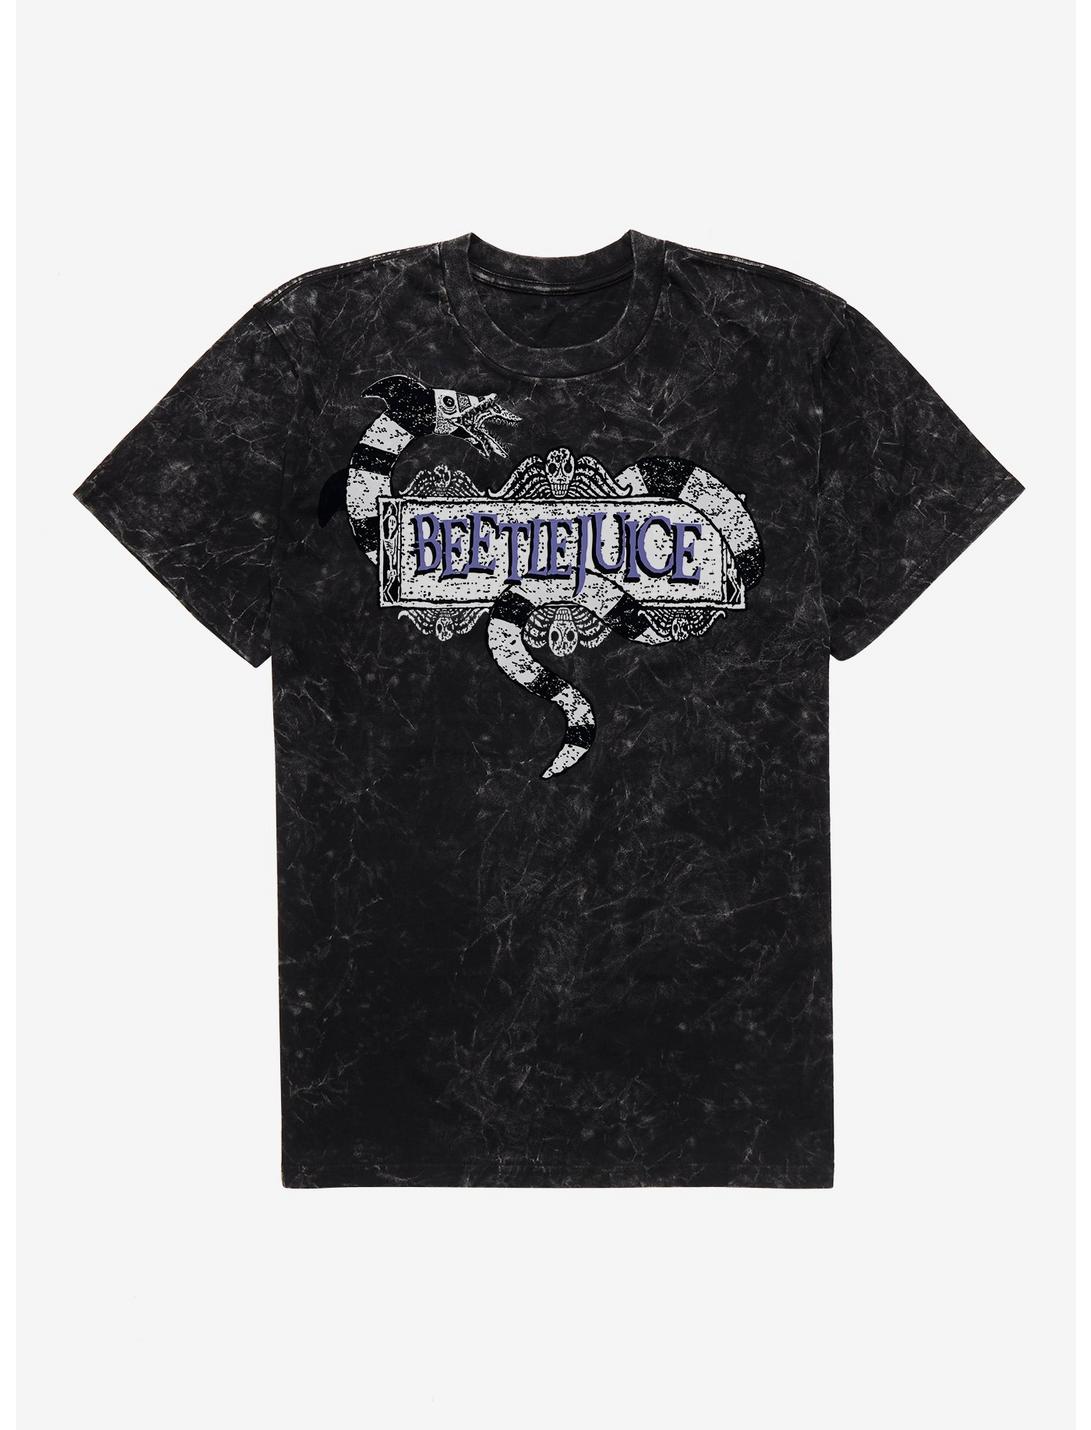 Beetlejuice Sandworm Logo T-Shirt, BLACK MINERAL WASH, hi-res